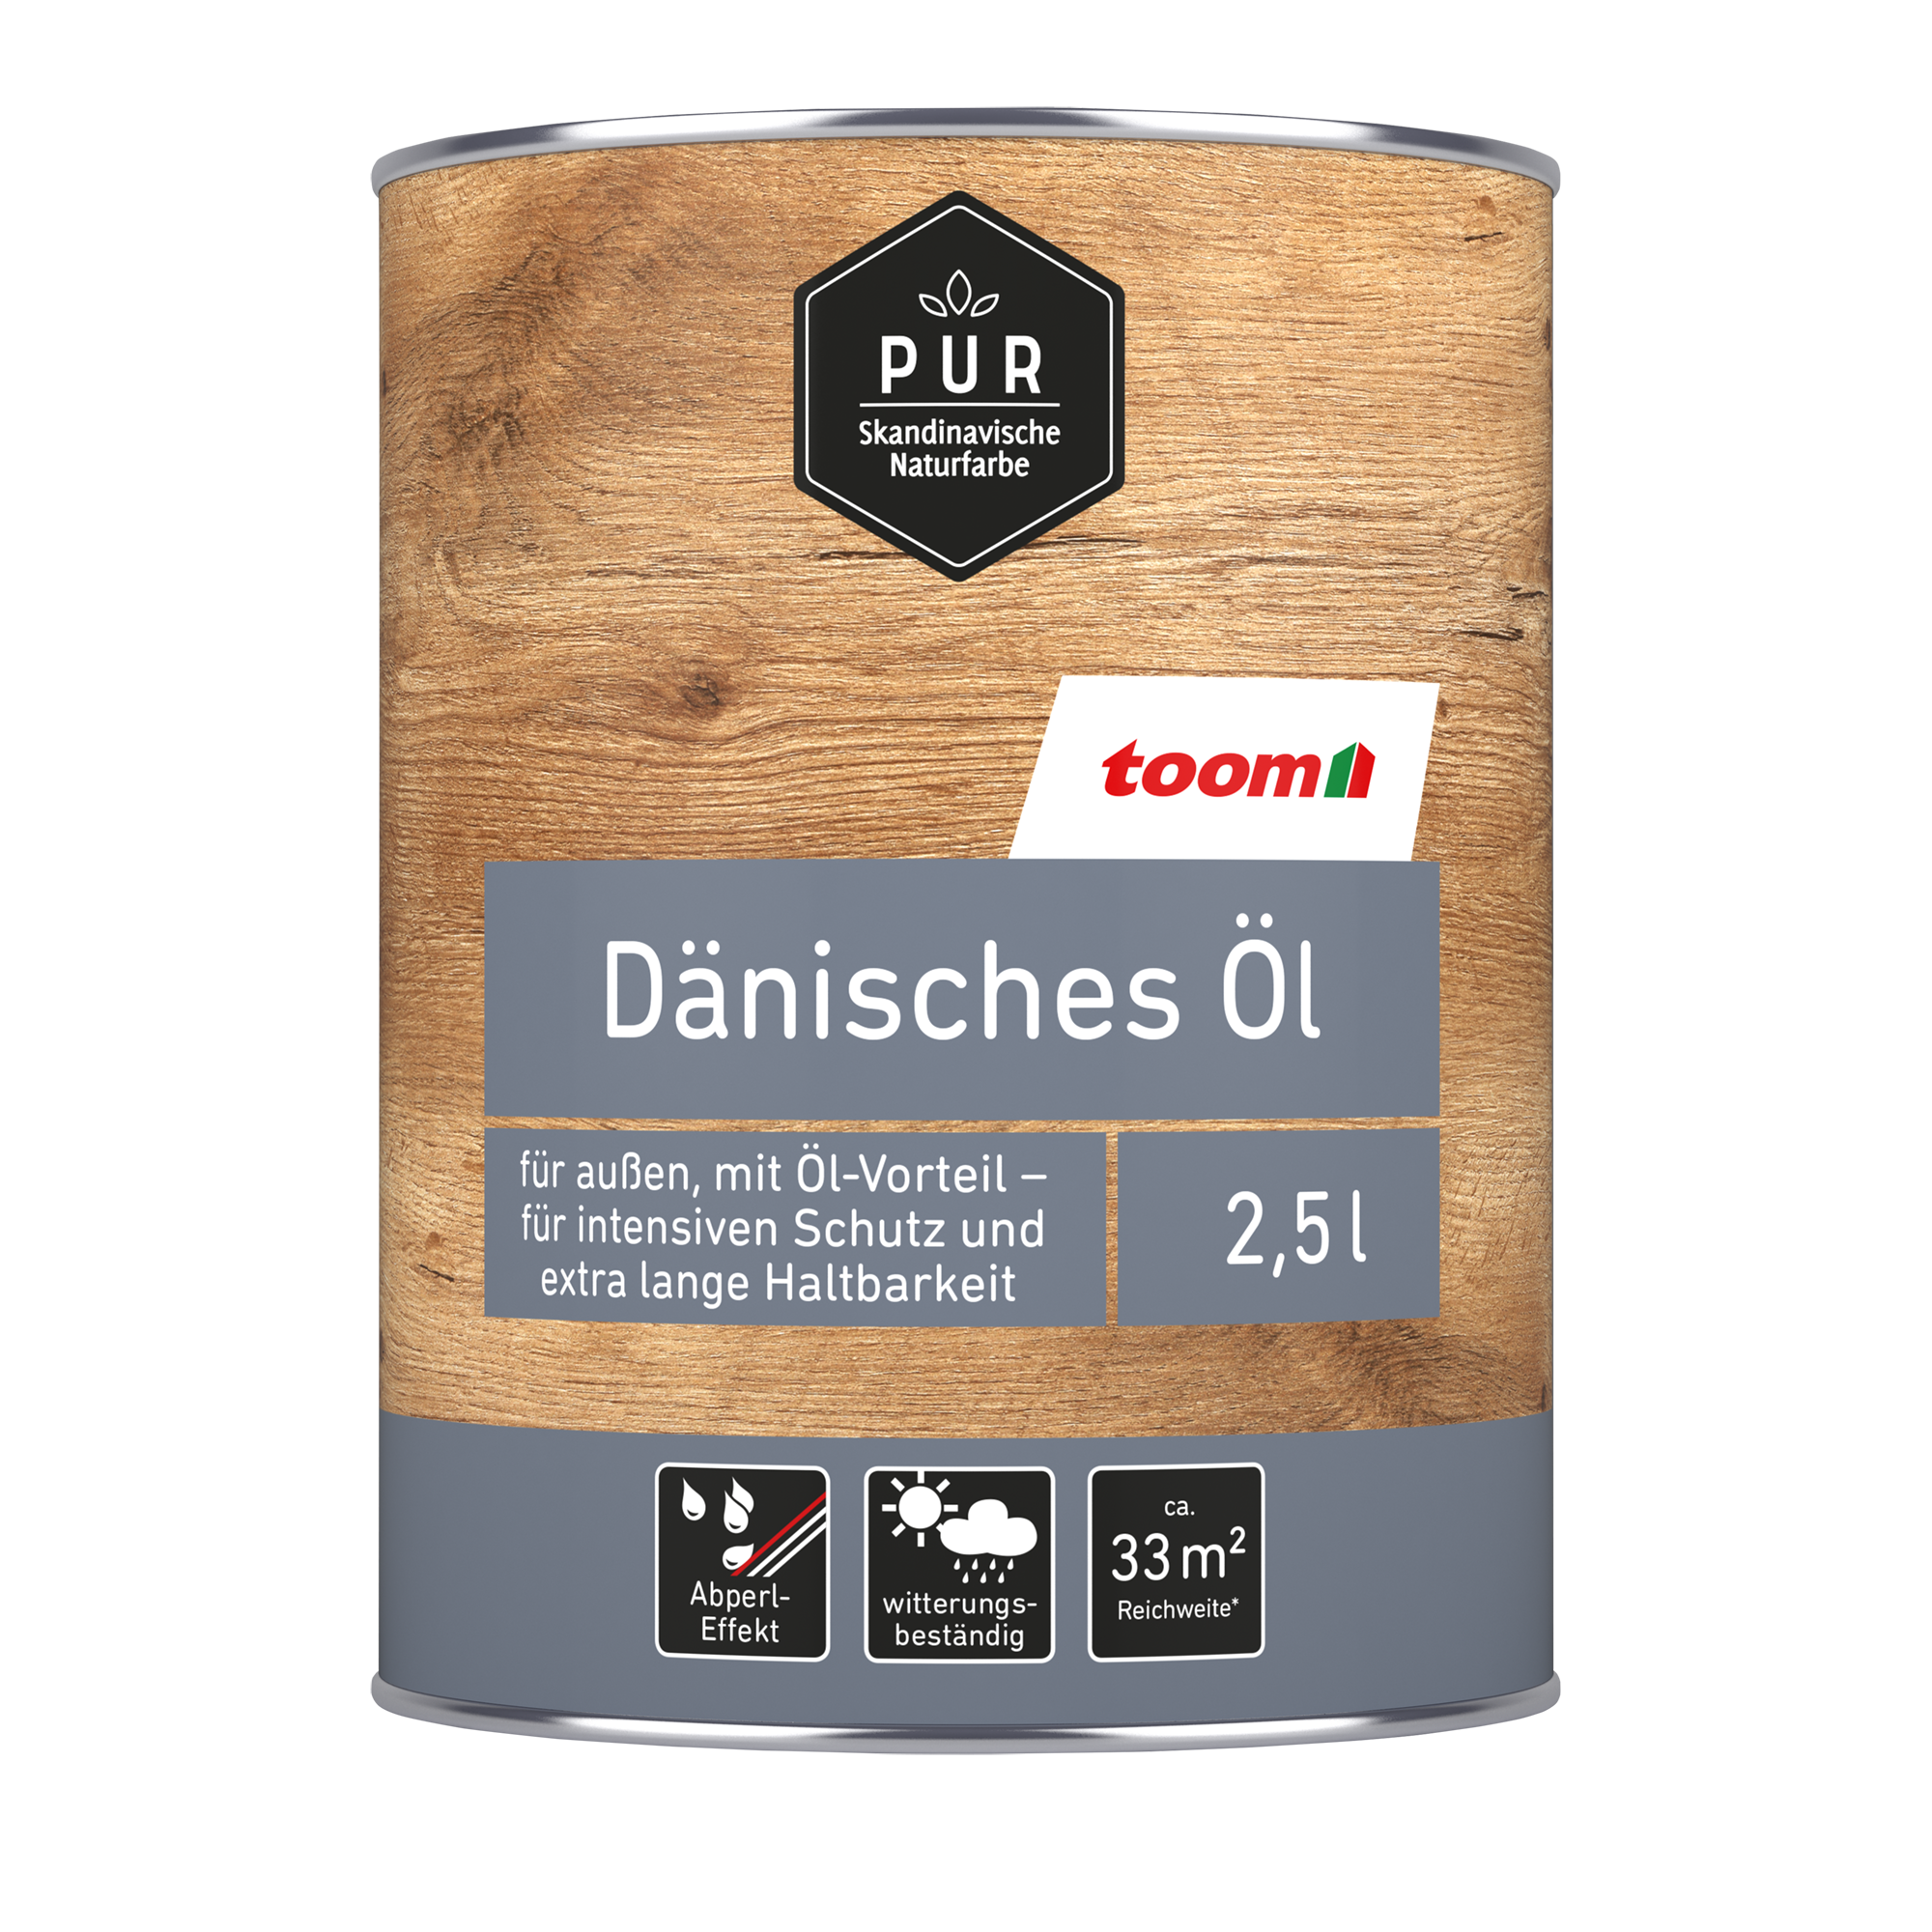 Dänisches Öl 'Natur' beige 2,5 l + product picture